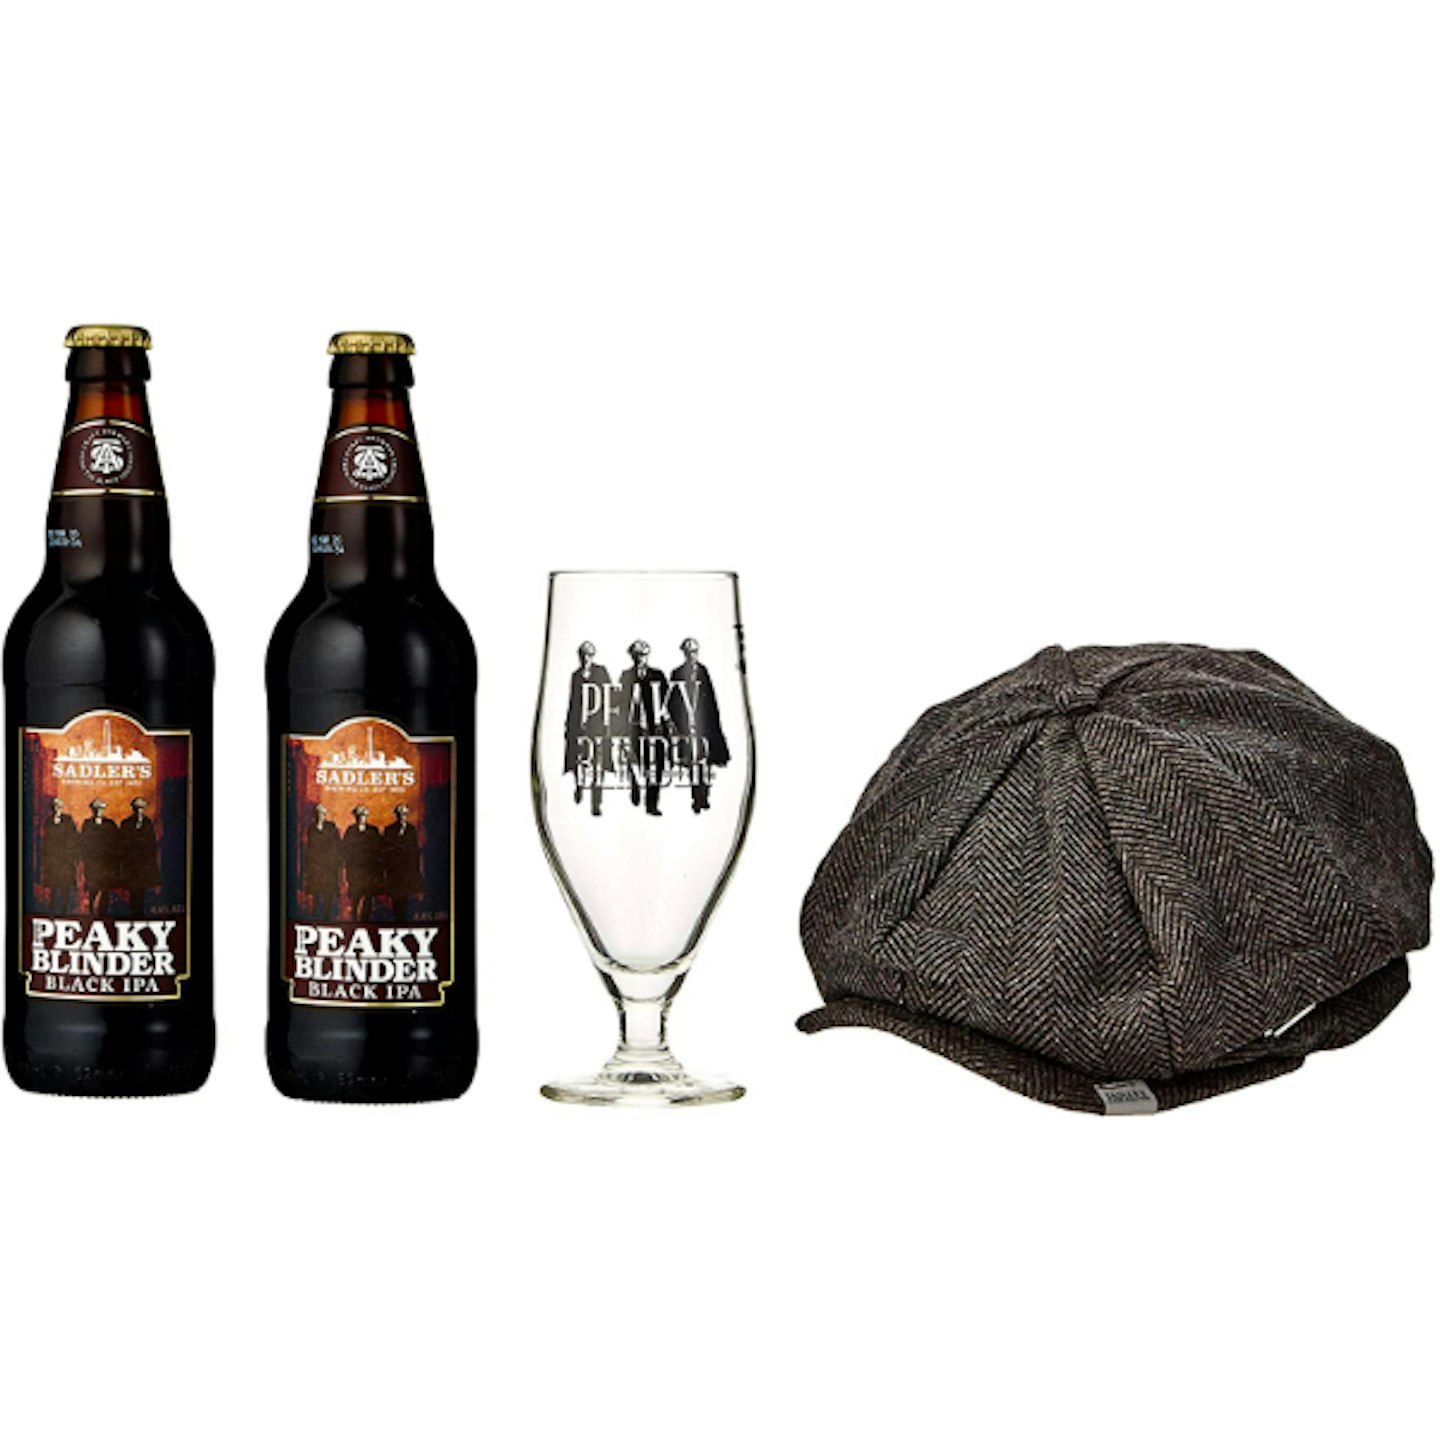 Peaky Blinders Beer, Cap and Glass Gift Pack